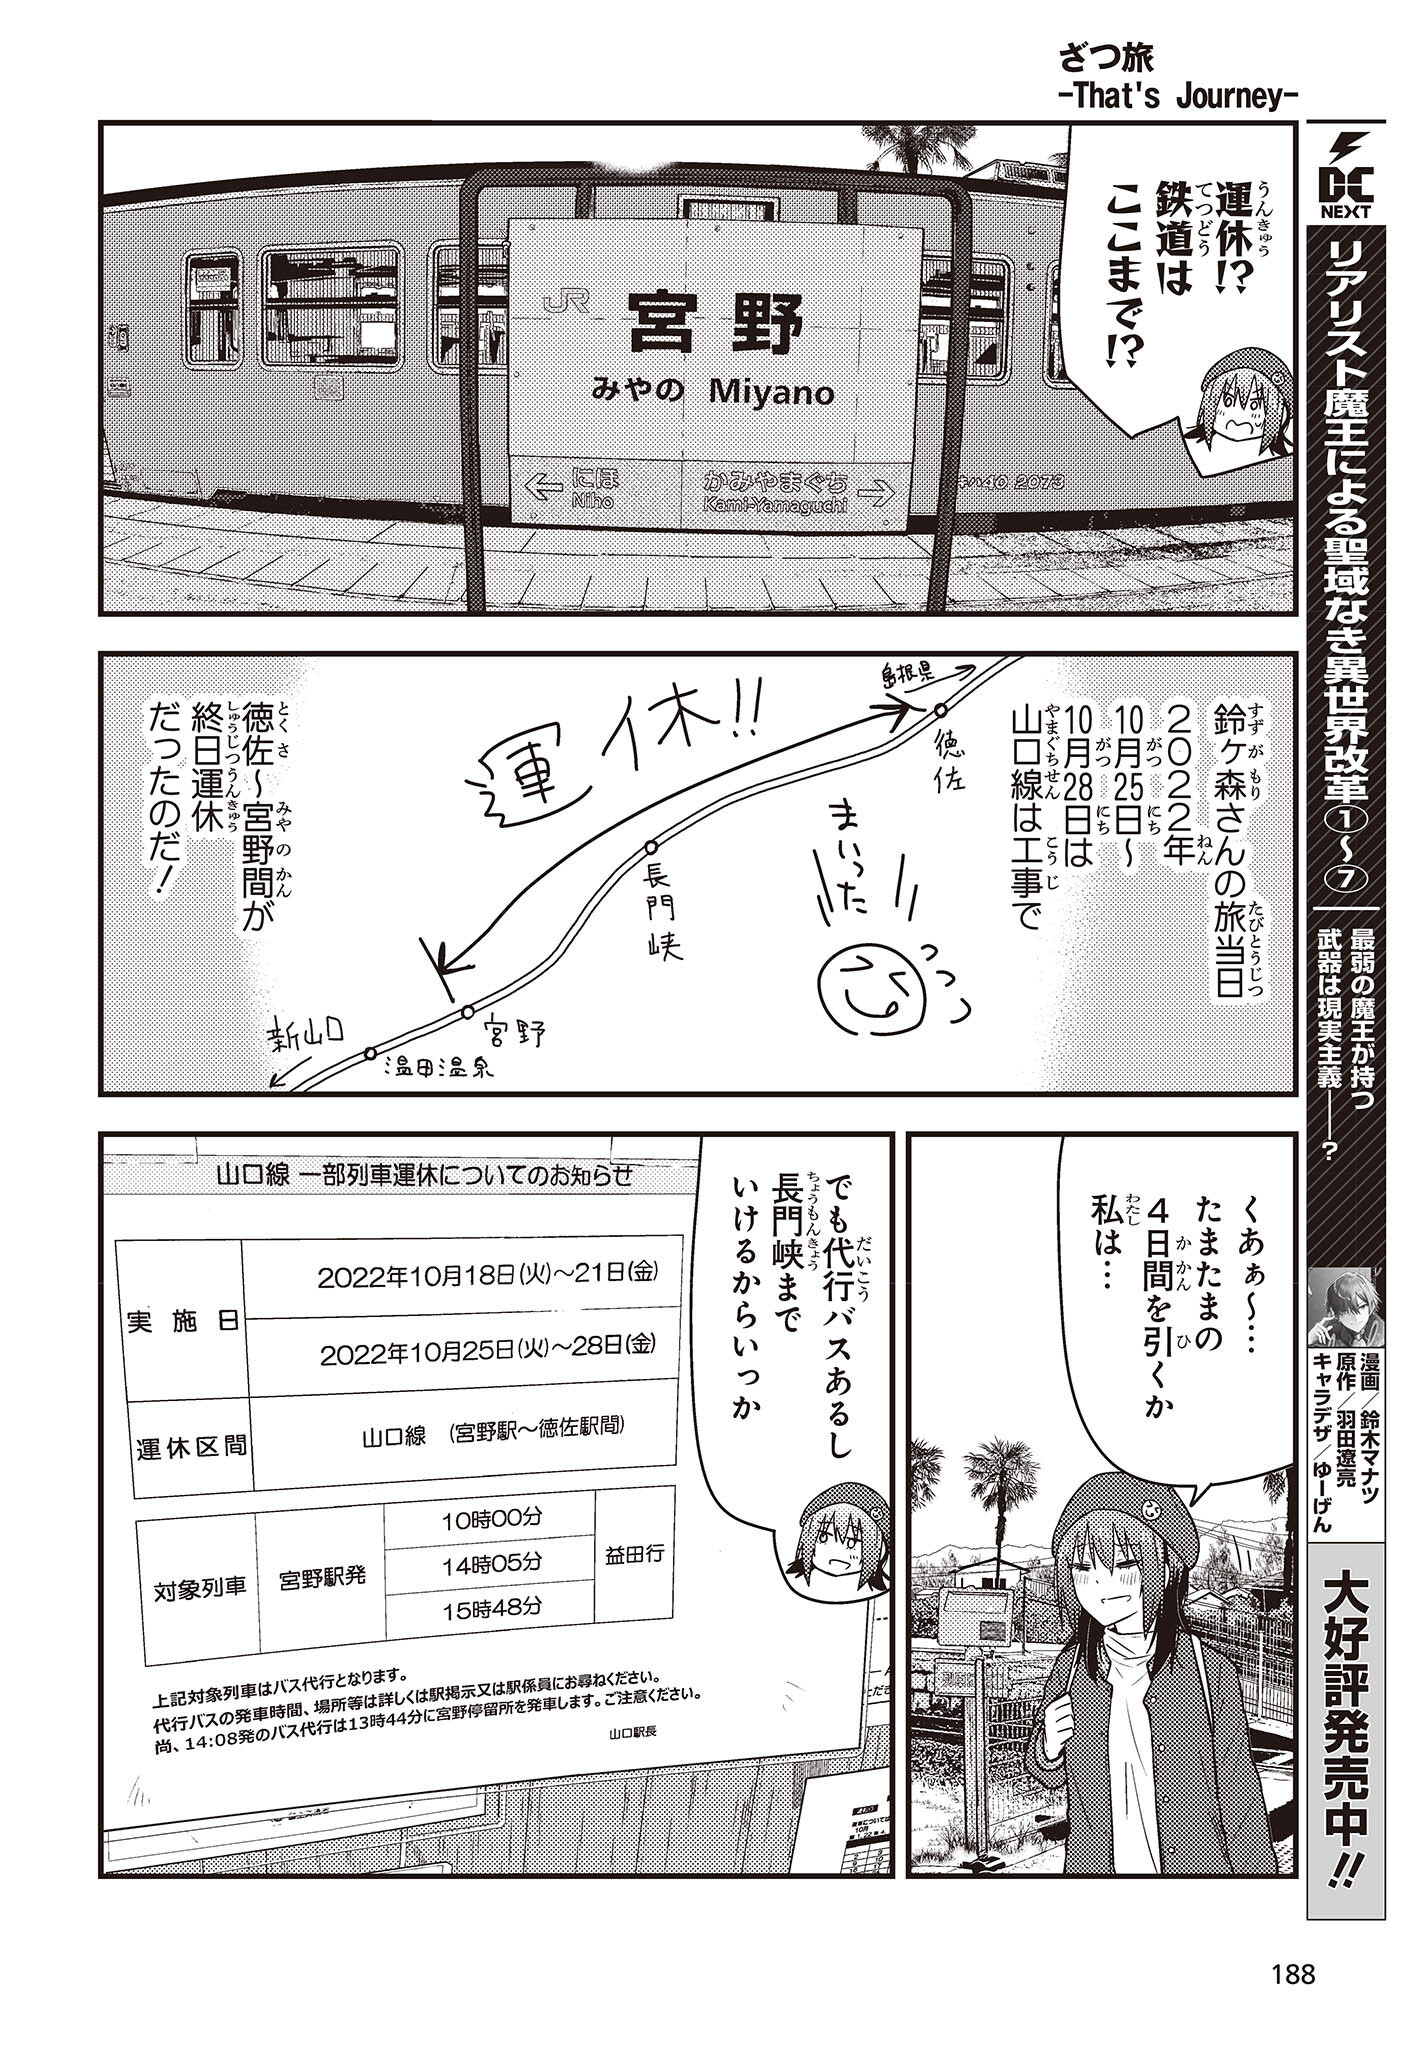 ざつ旅-That's Journey- 第29話 - Page 16